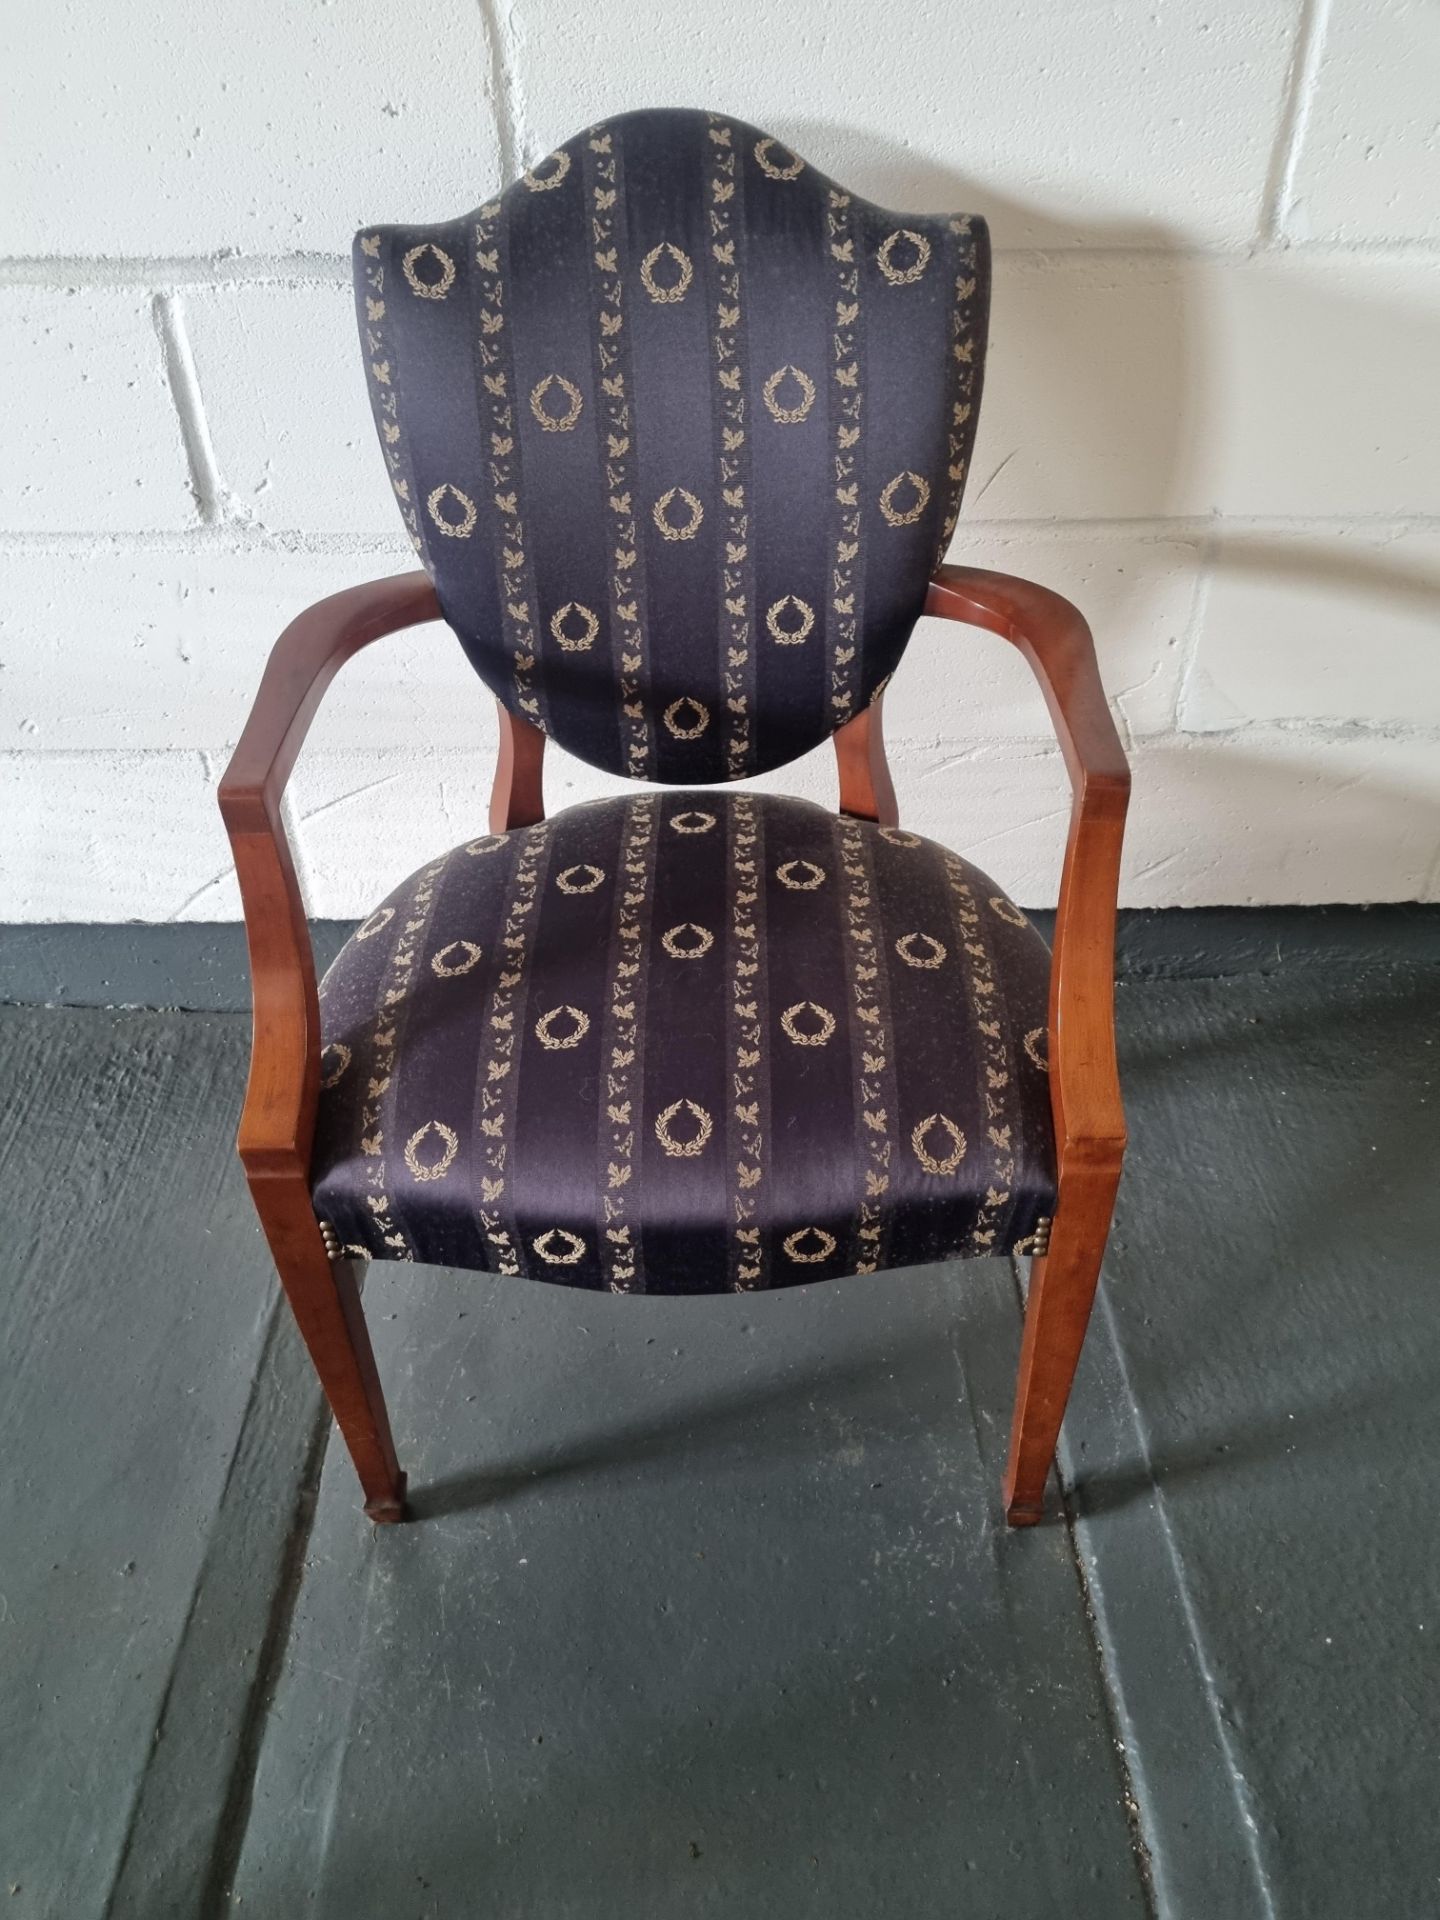 Arthur Brett Upholstered Shield Back Arm Chair Blue Patterned Bespoke Upholstery The Shield Back